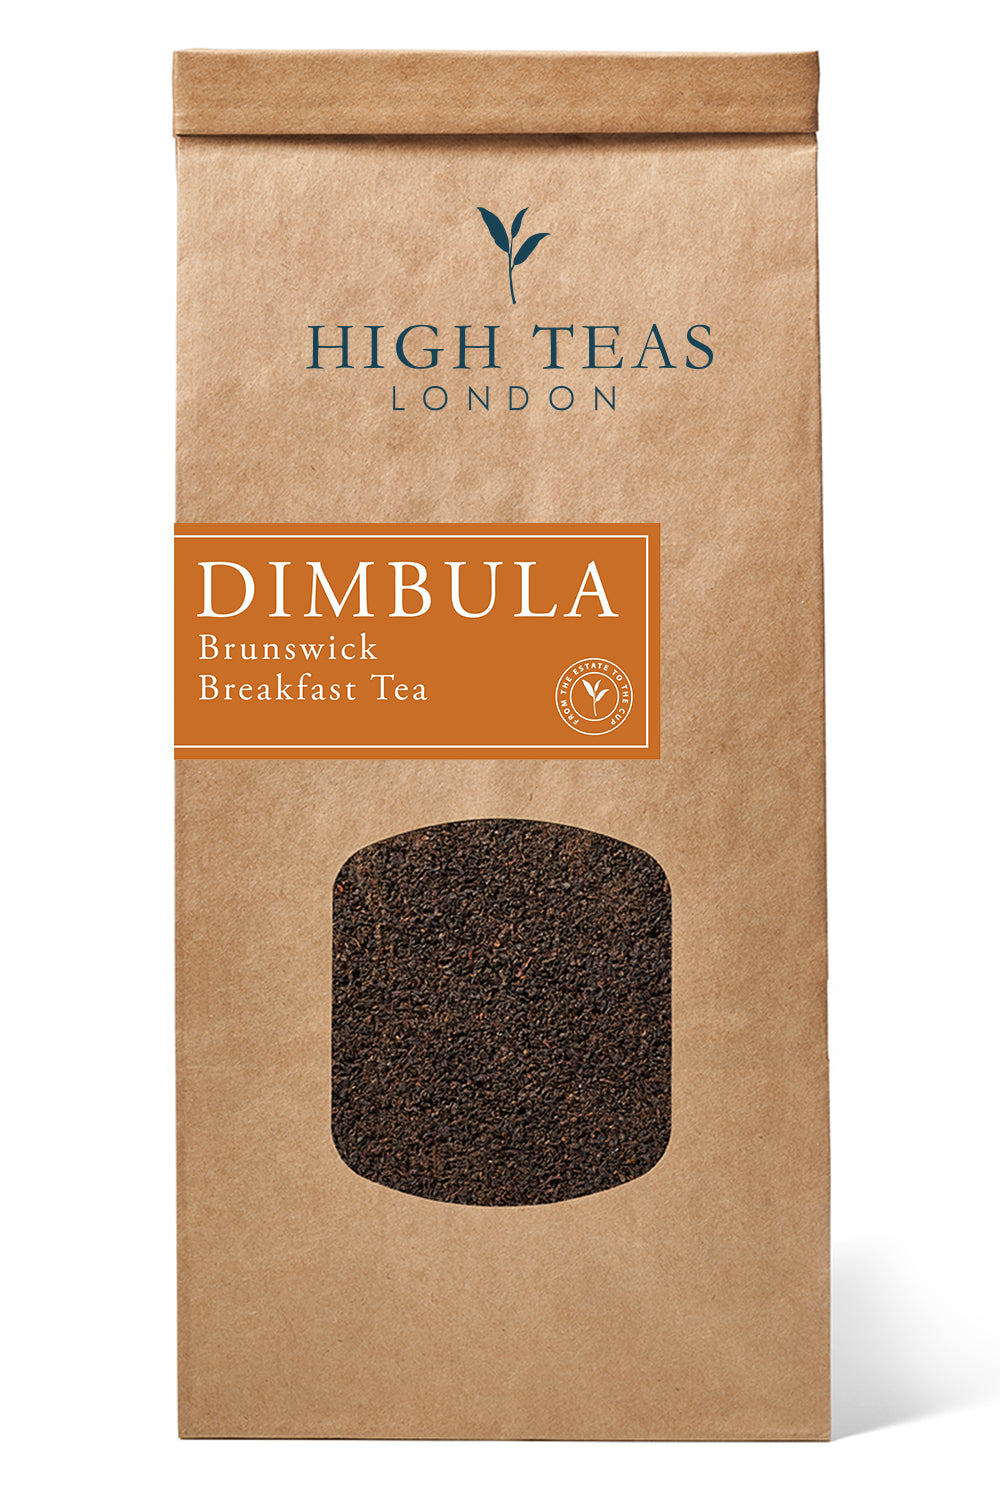 Dimbula BOP, Brunswick Breakfast Tea-250g-Loose Leaf Tea-High Teas